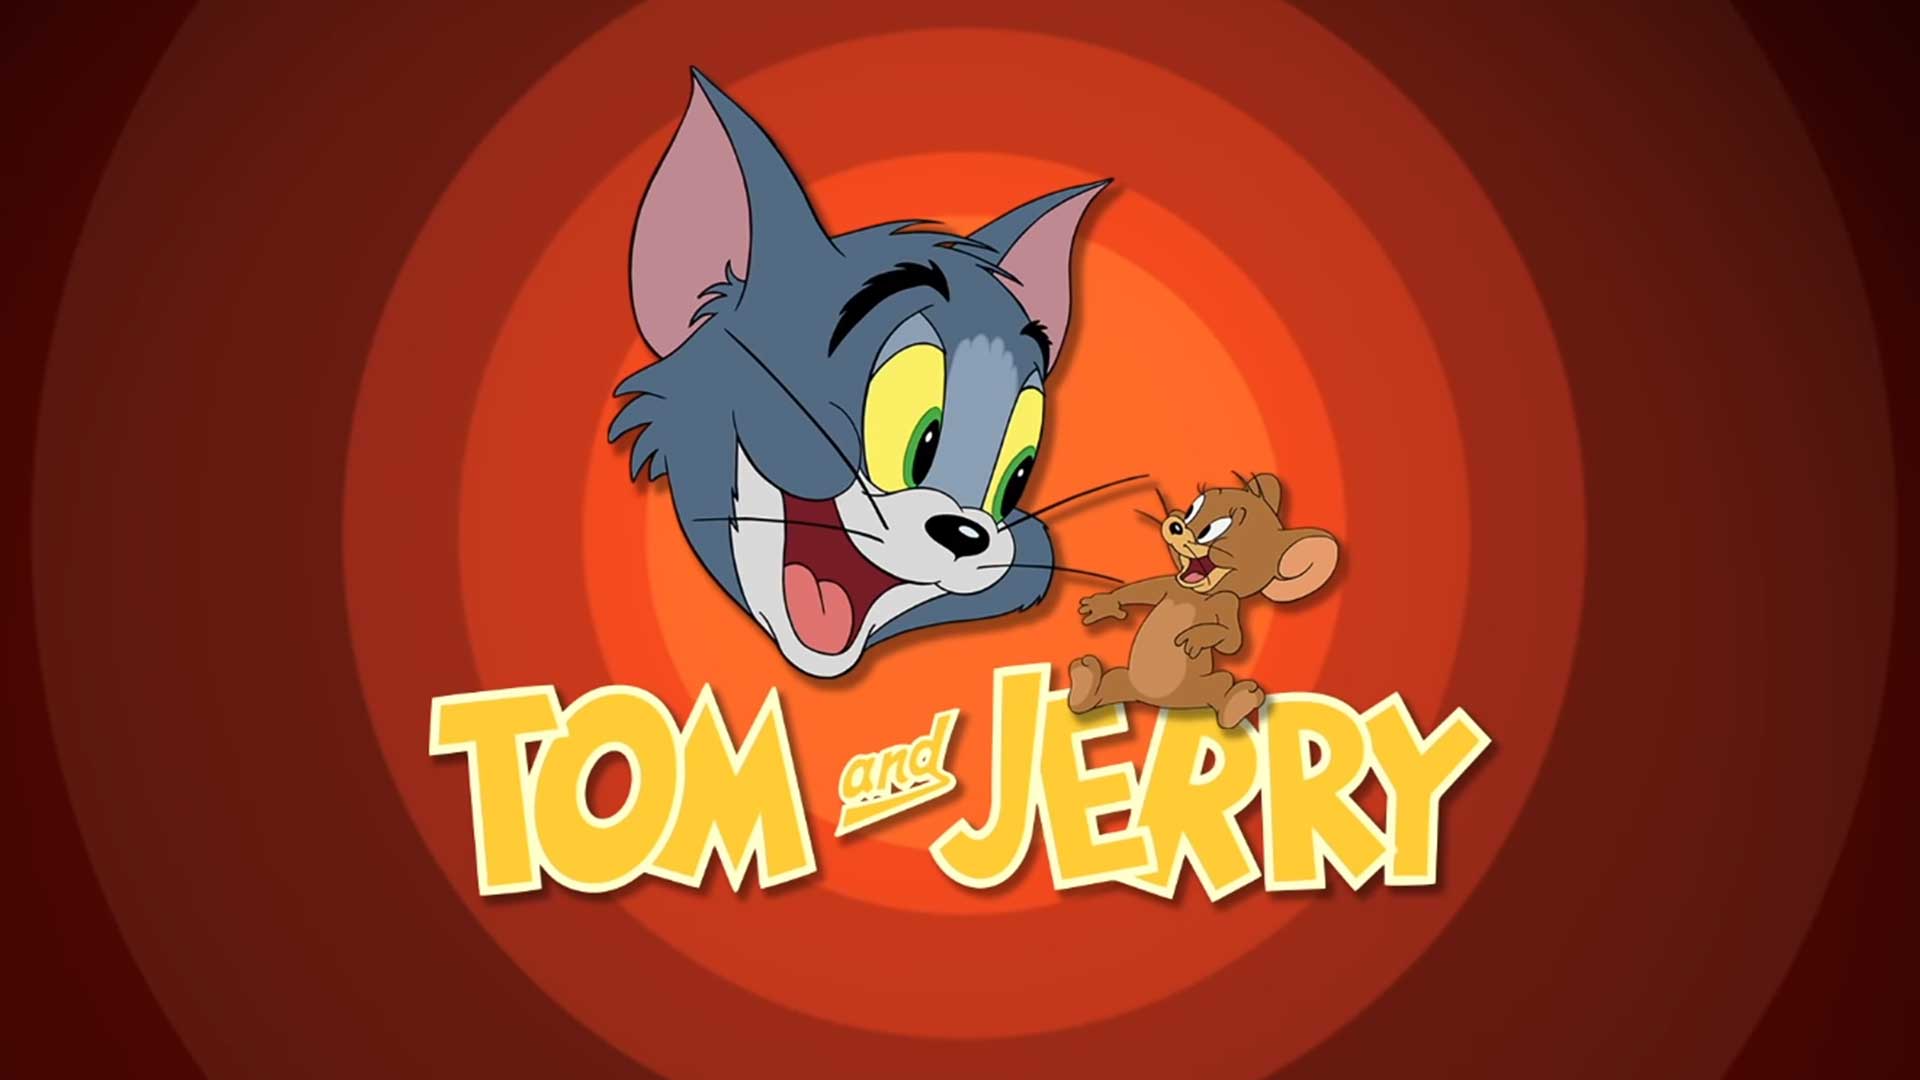 Том и Джерри – 131 серия «Много шума из-за мышонка» / Tom and Jerry